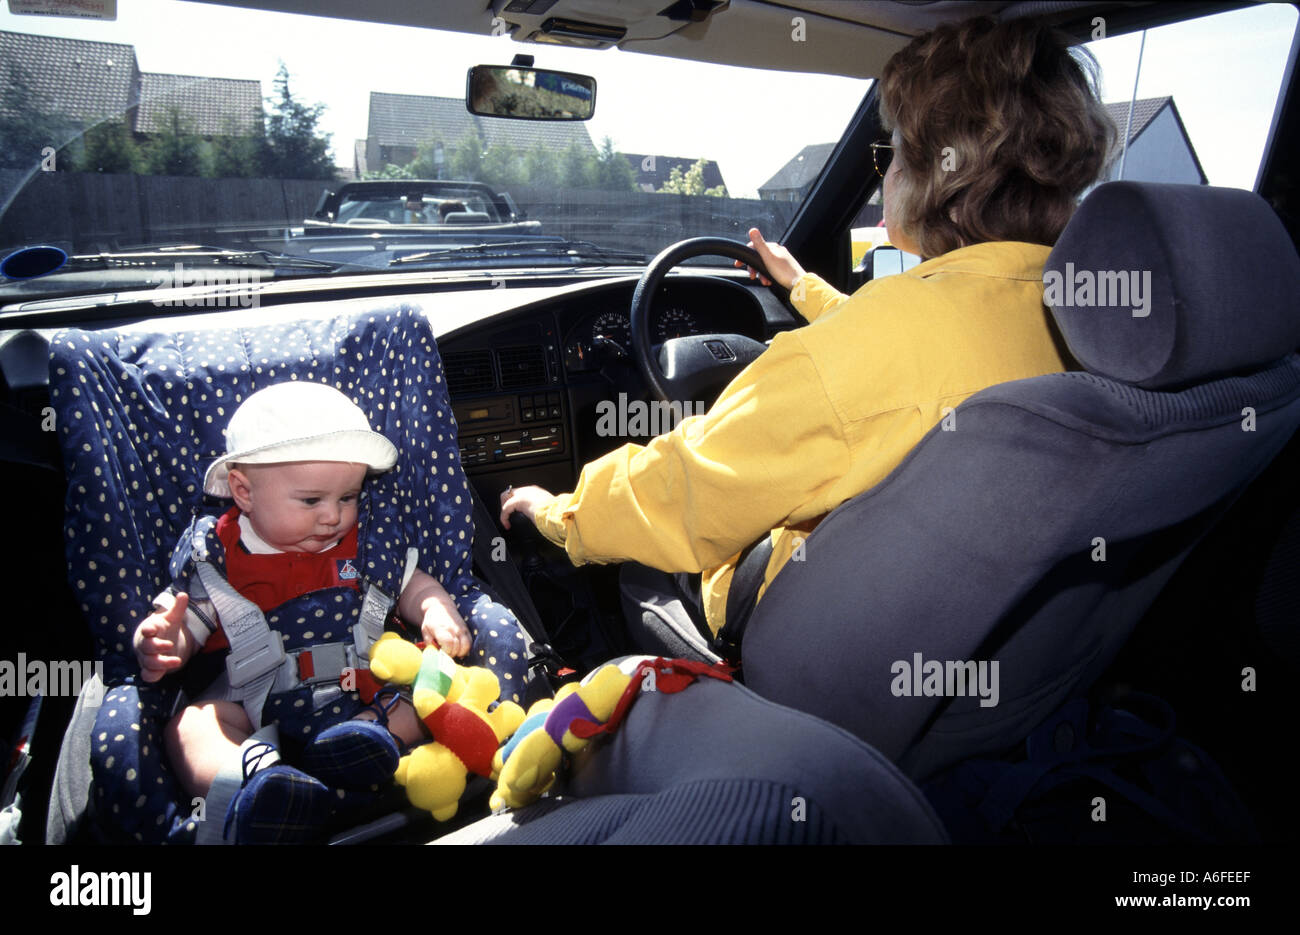 Siège de sécurité auto pour enfant orienté vers l'arrière tel qu'installé dans la vue d'archives historiques de 1996 du nouveau-né garçon voyageant dans la voiture de mères le long de la route achalandée Angleterre Royaume-Uni Banque D'Images